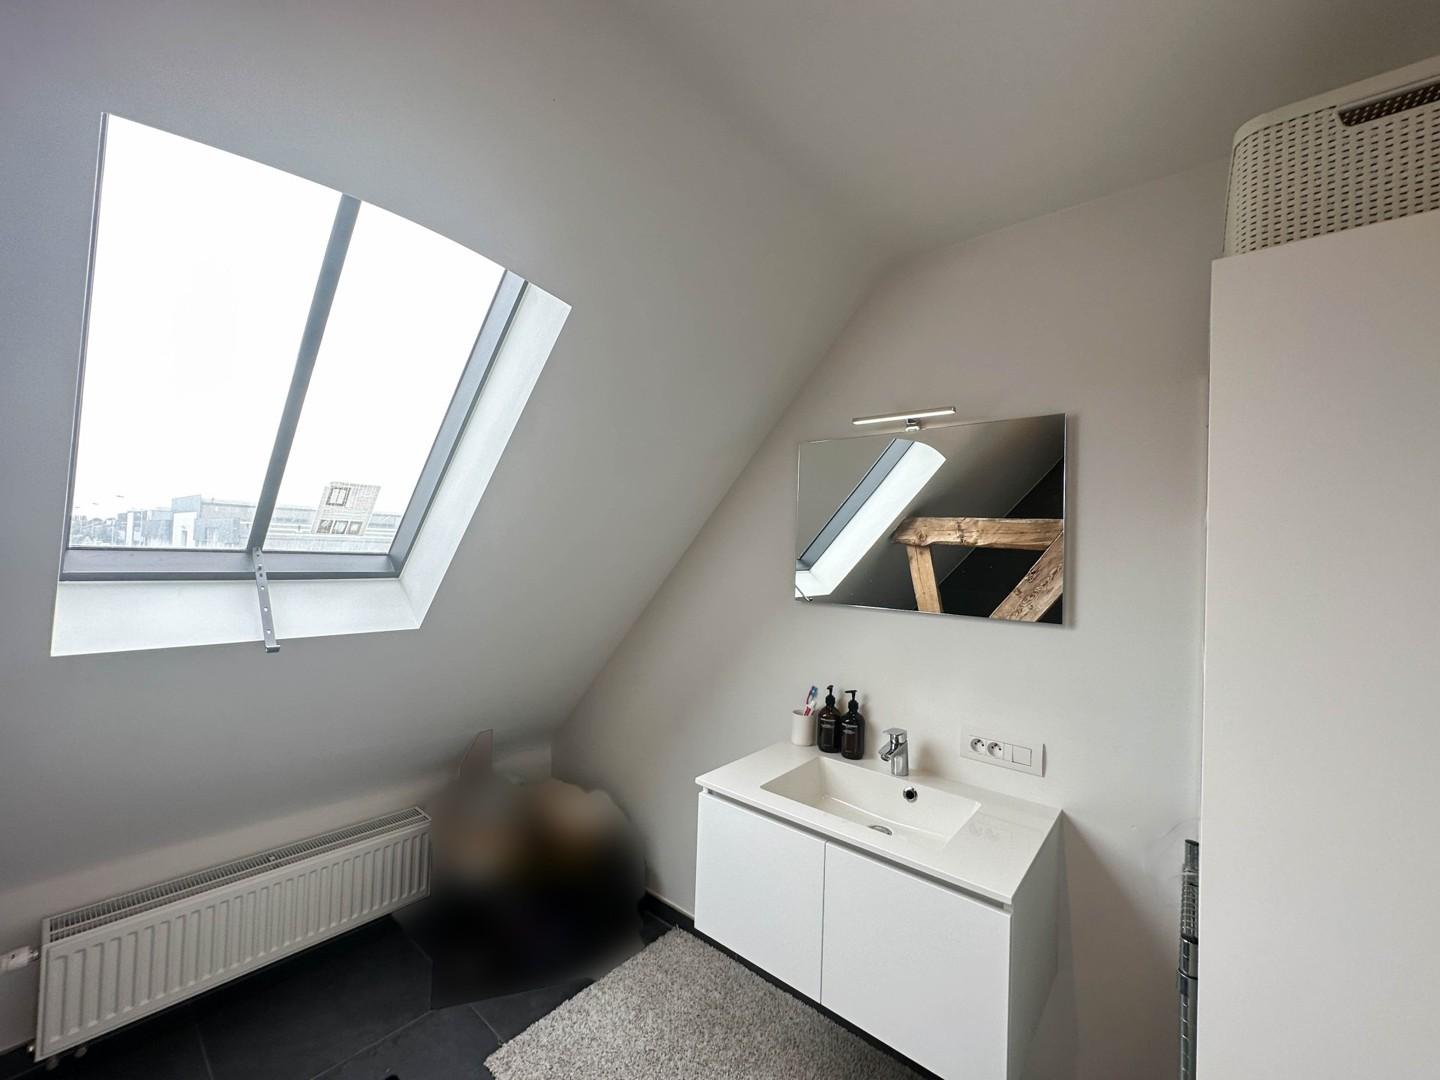 Recente HOB met 3 kamers op een rustige site nabij het bruisende centrum van Brugge!